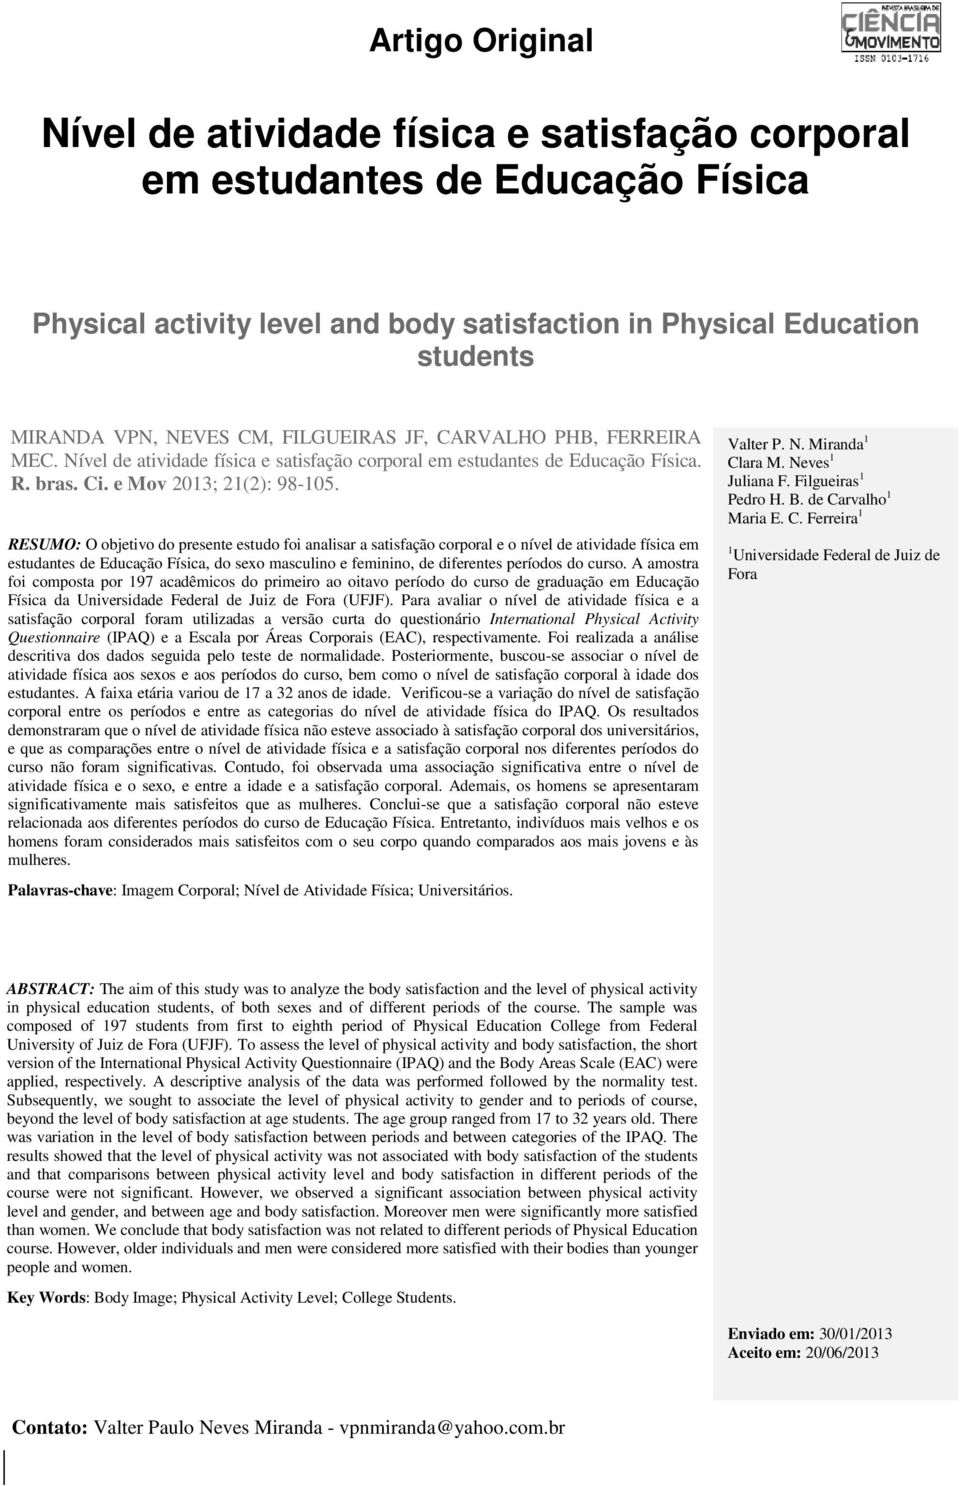 RESUMO: O objetivo do presente estudo foi analisar a satisfação corporal e o nível de atividade física em estudantes de Educação Física, do sexo masculino e feminino, de diferentes períodos do curso.